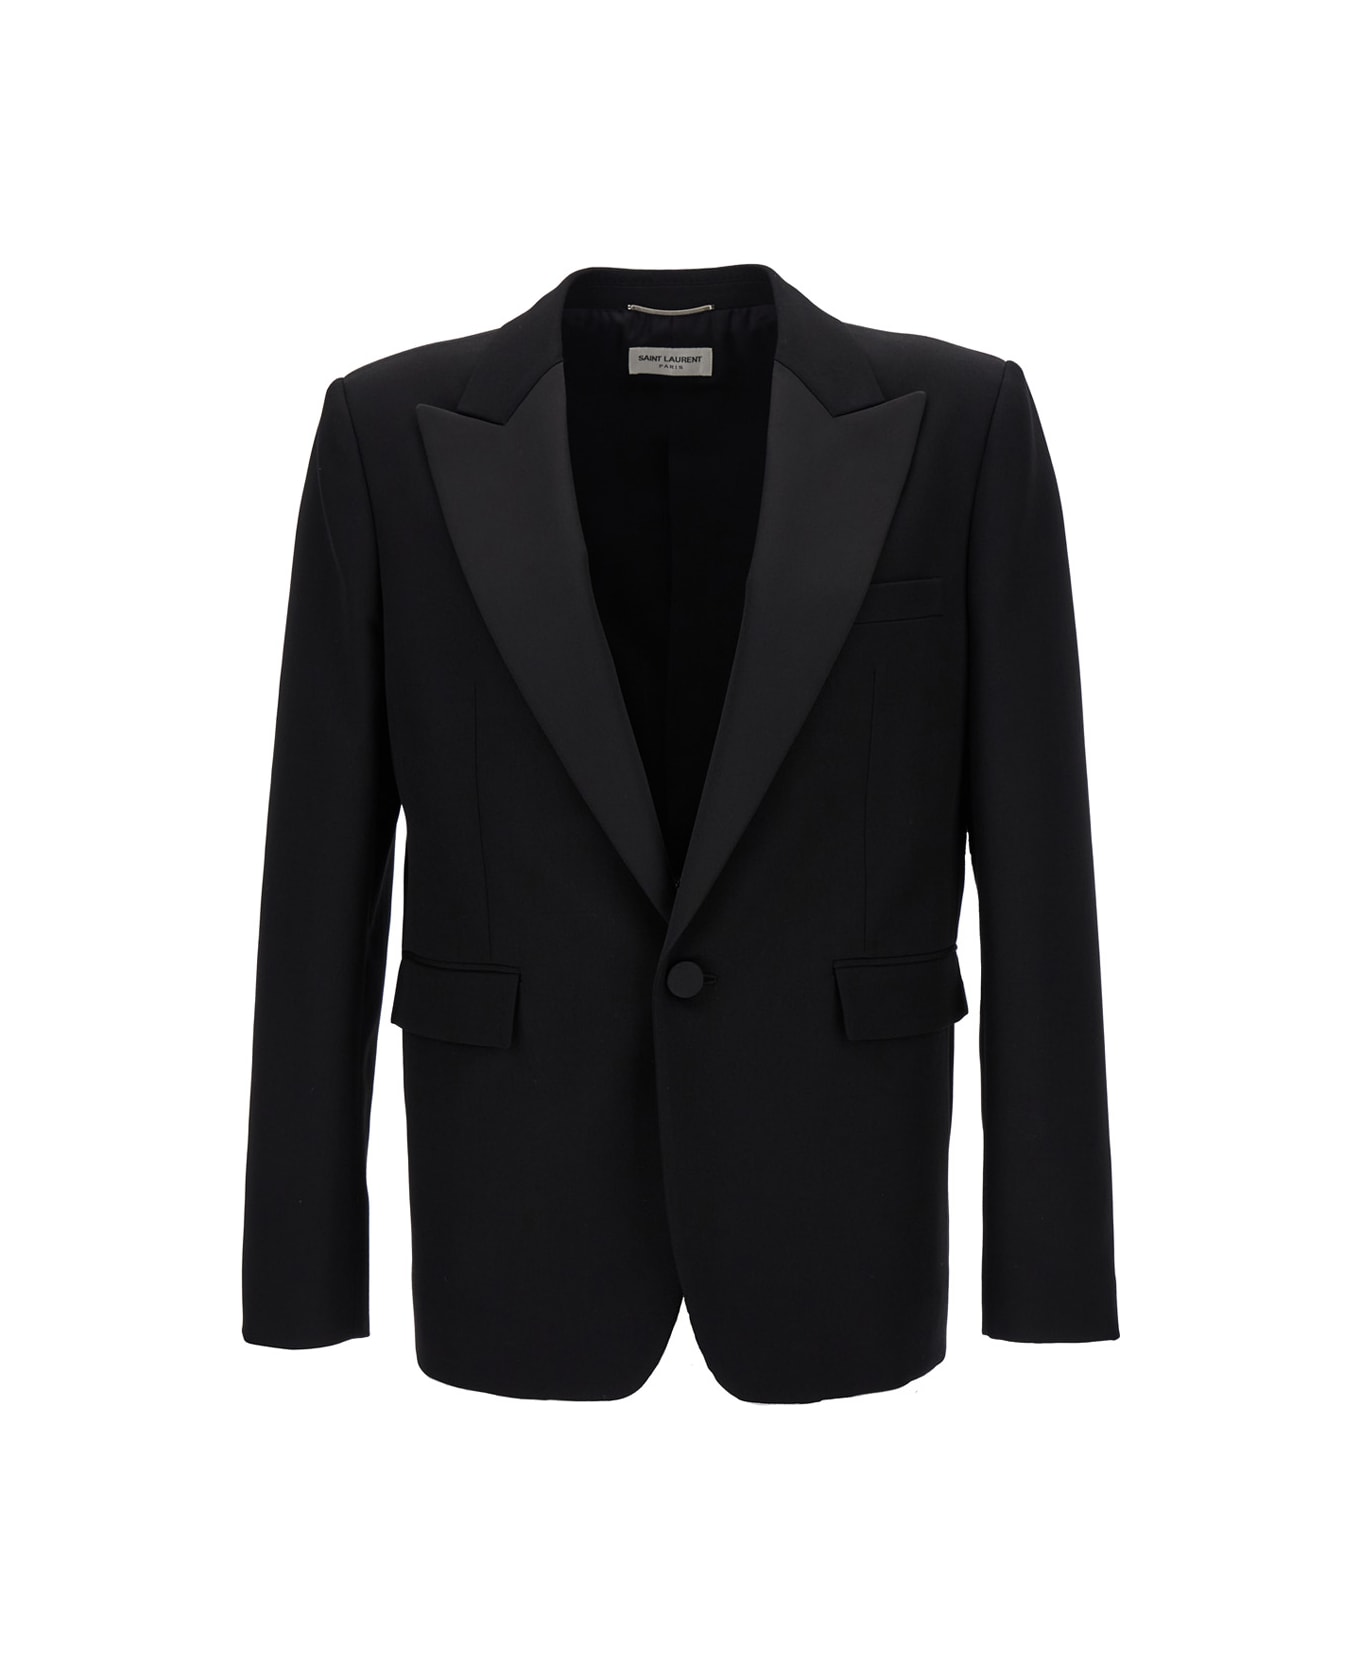 Saint Laurent Black Single-breasted Tuxedo Jacket In Virgin Wool Man - Black